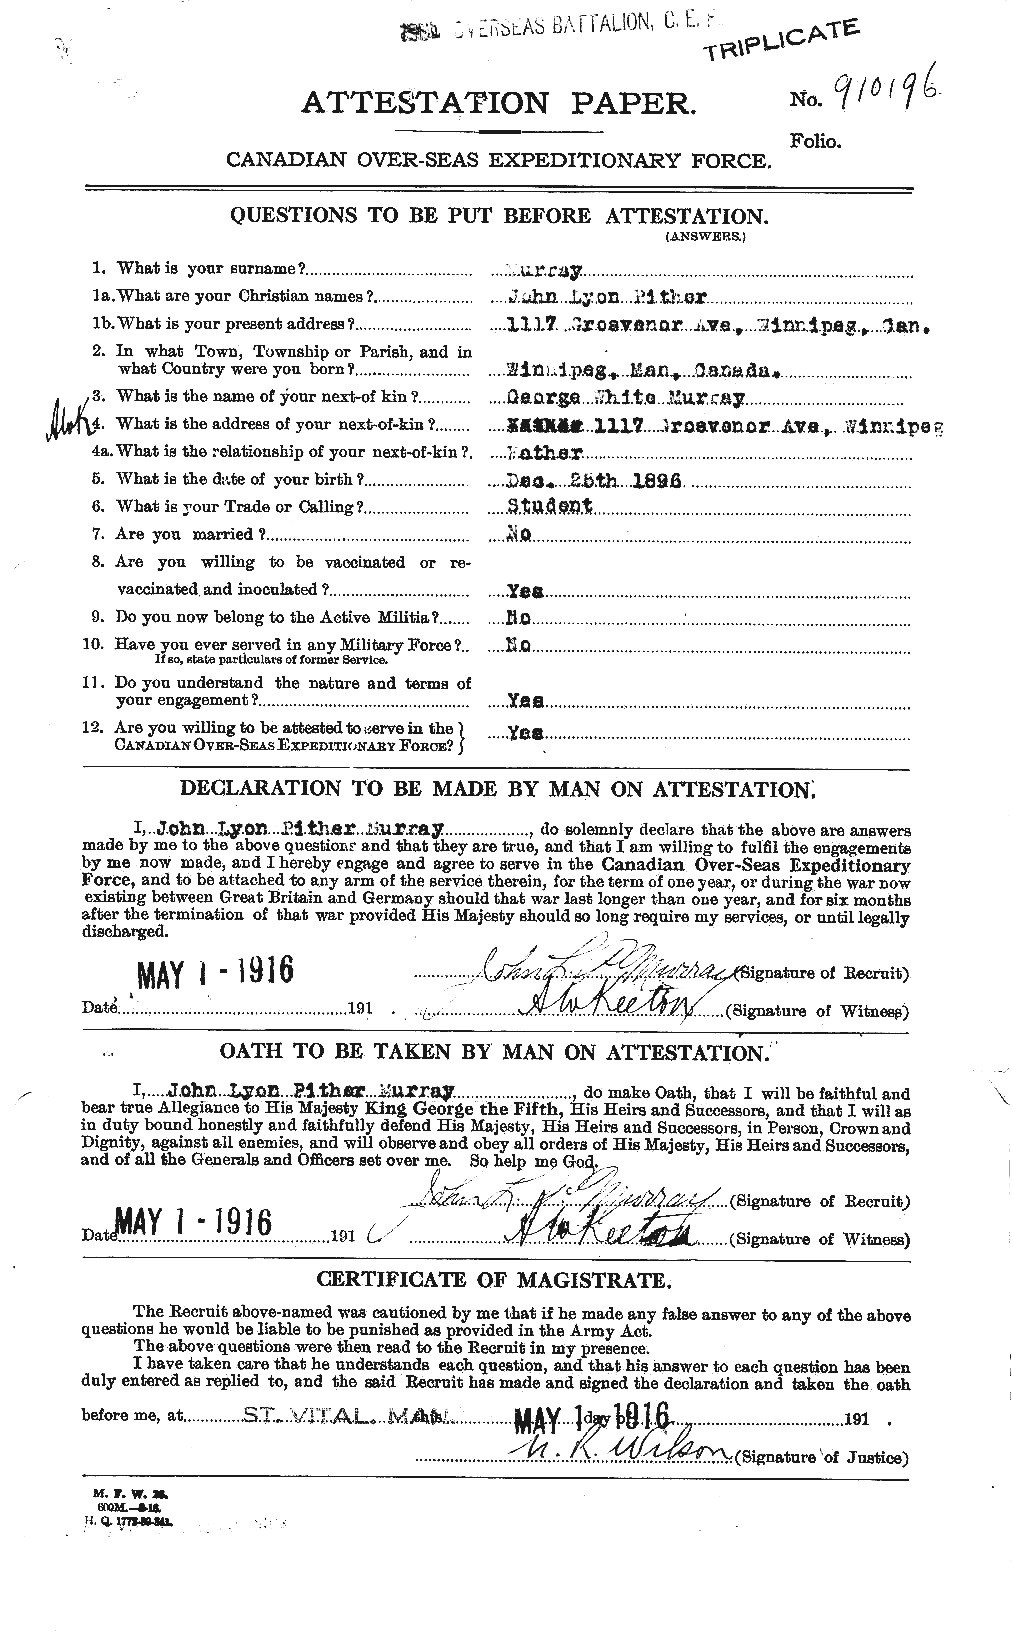 Dossiers du Personnel de la Première Guerre mondiale - CEC 518611a